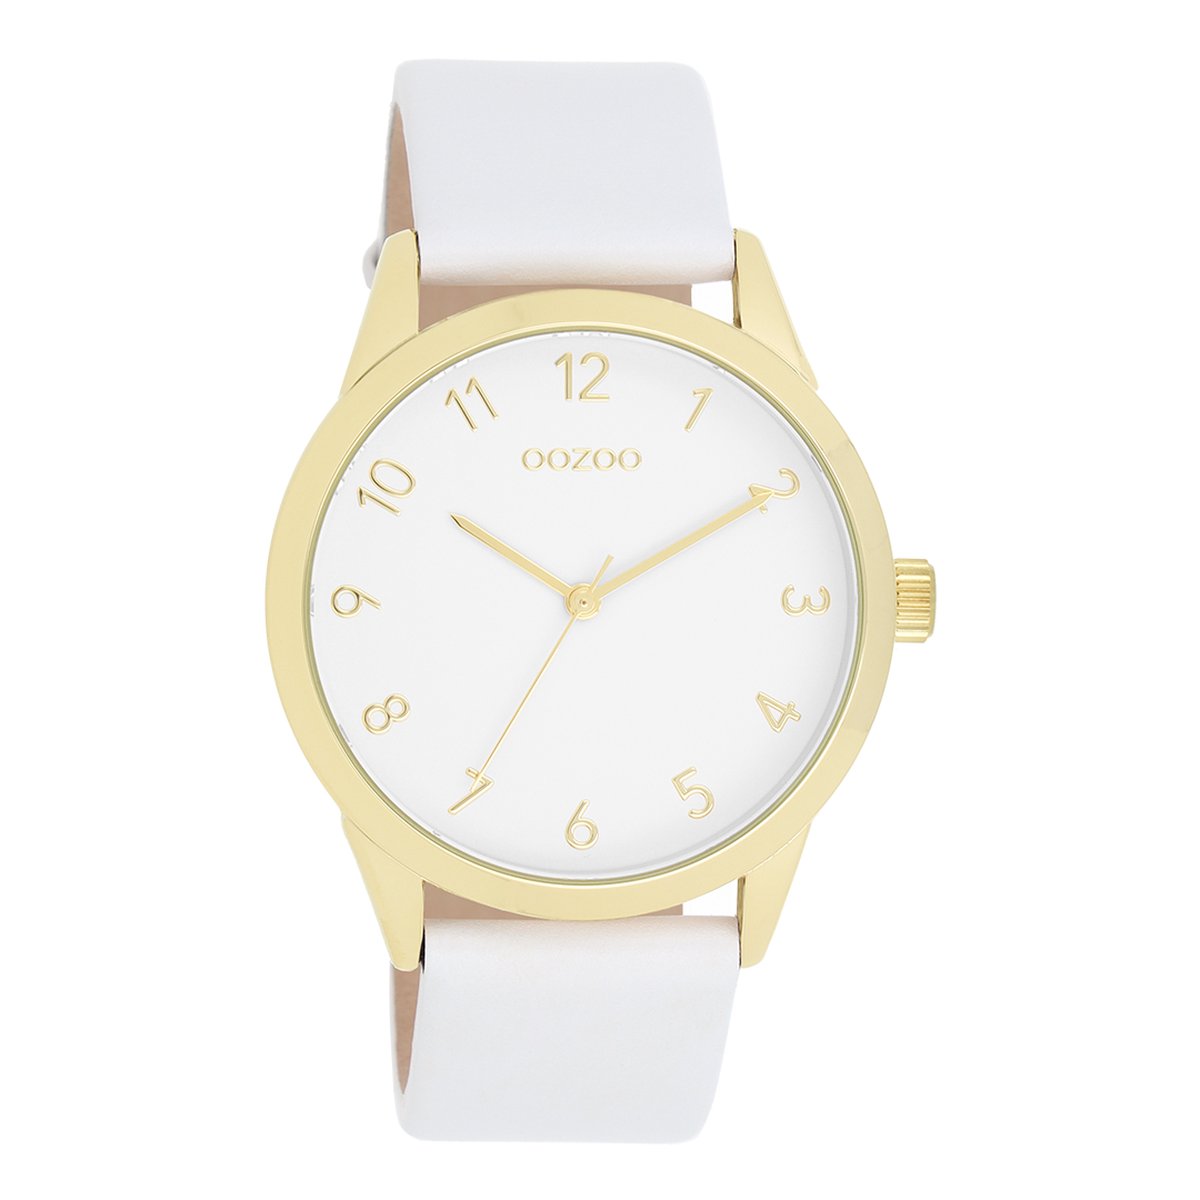 Goudkleurige OOZOO horloge met witte leren band - C11325